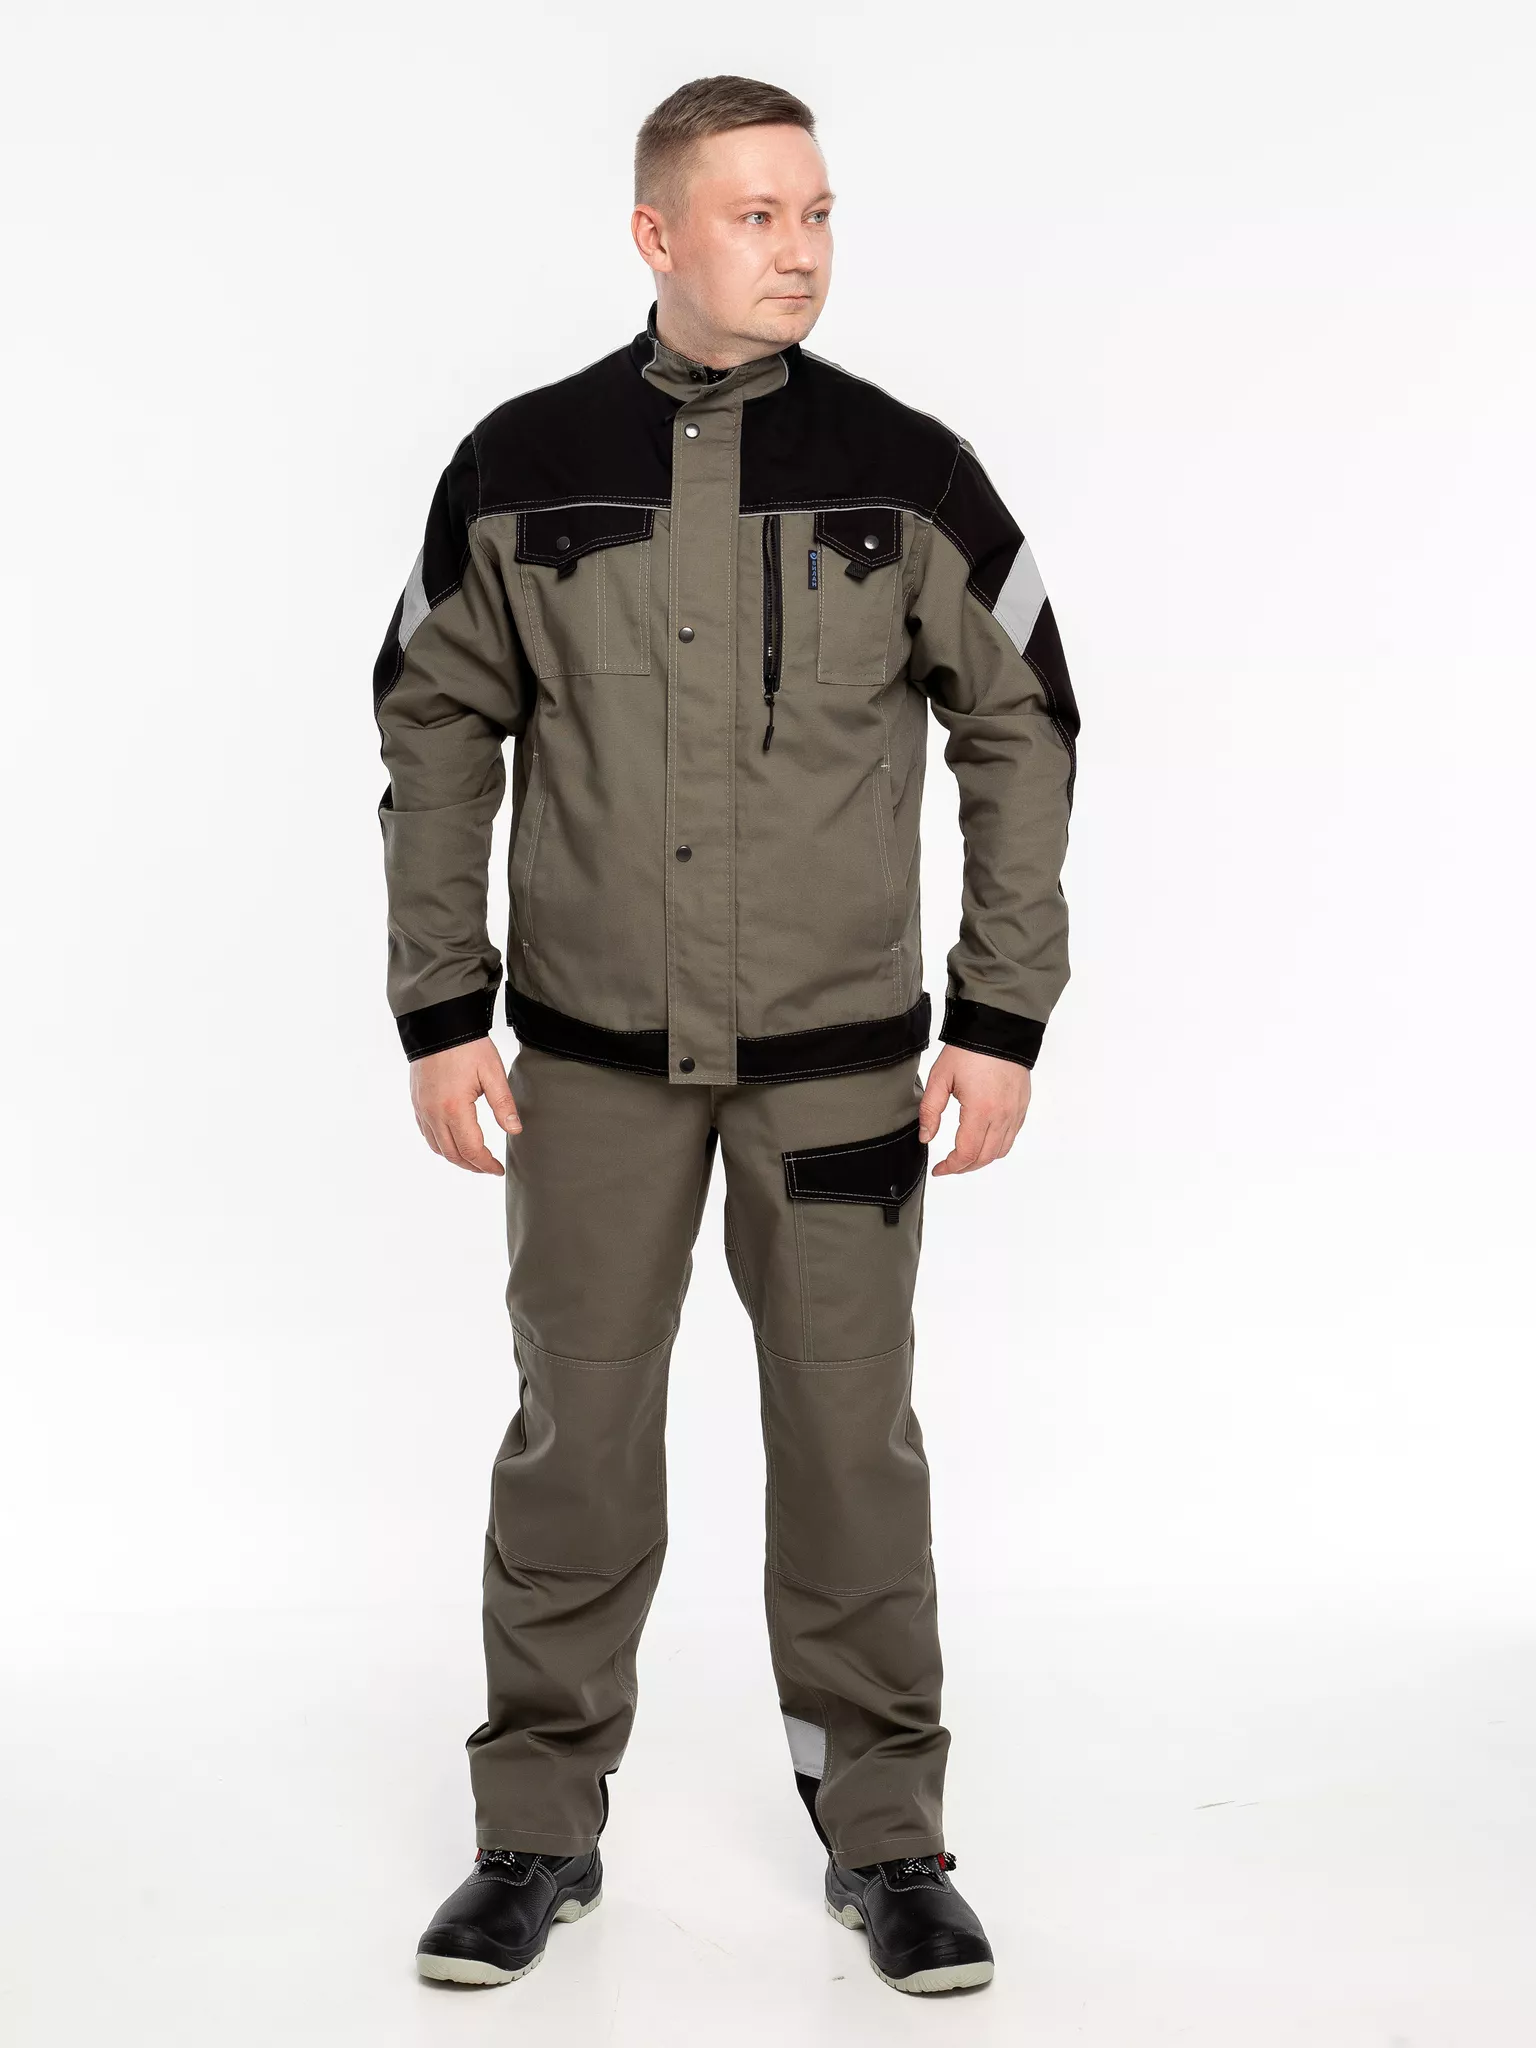 Куртка рабочая КР.366 р.52-54, рост 182-188 (цвет оливковый, отделка черная.СОП)